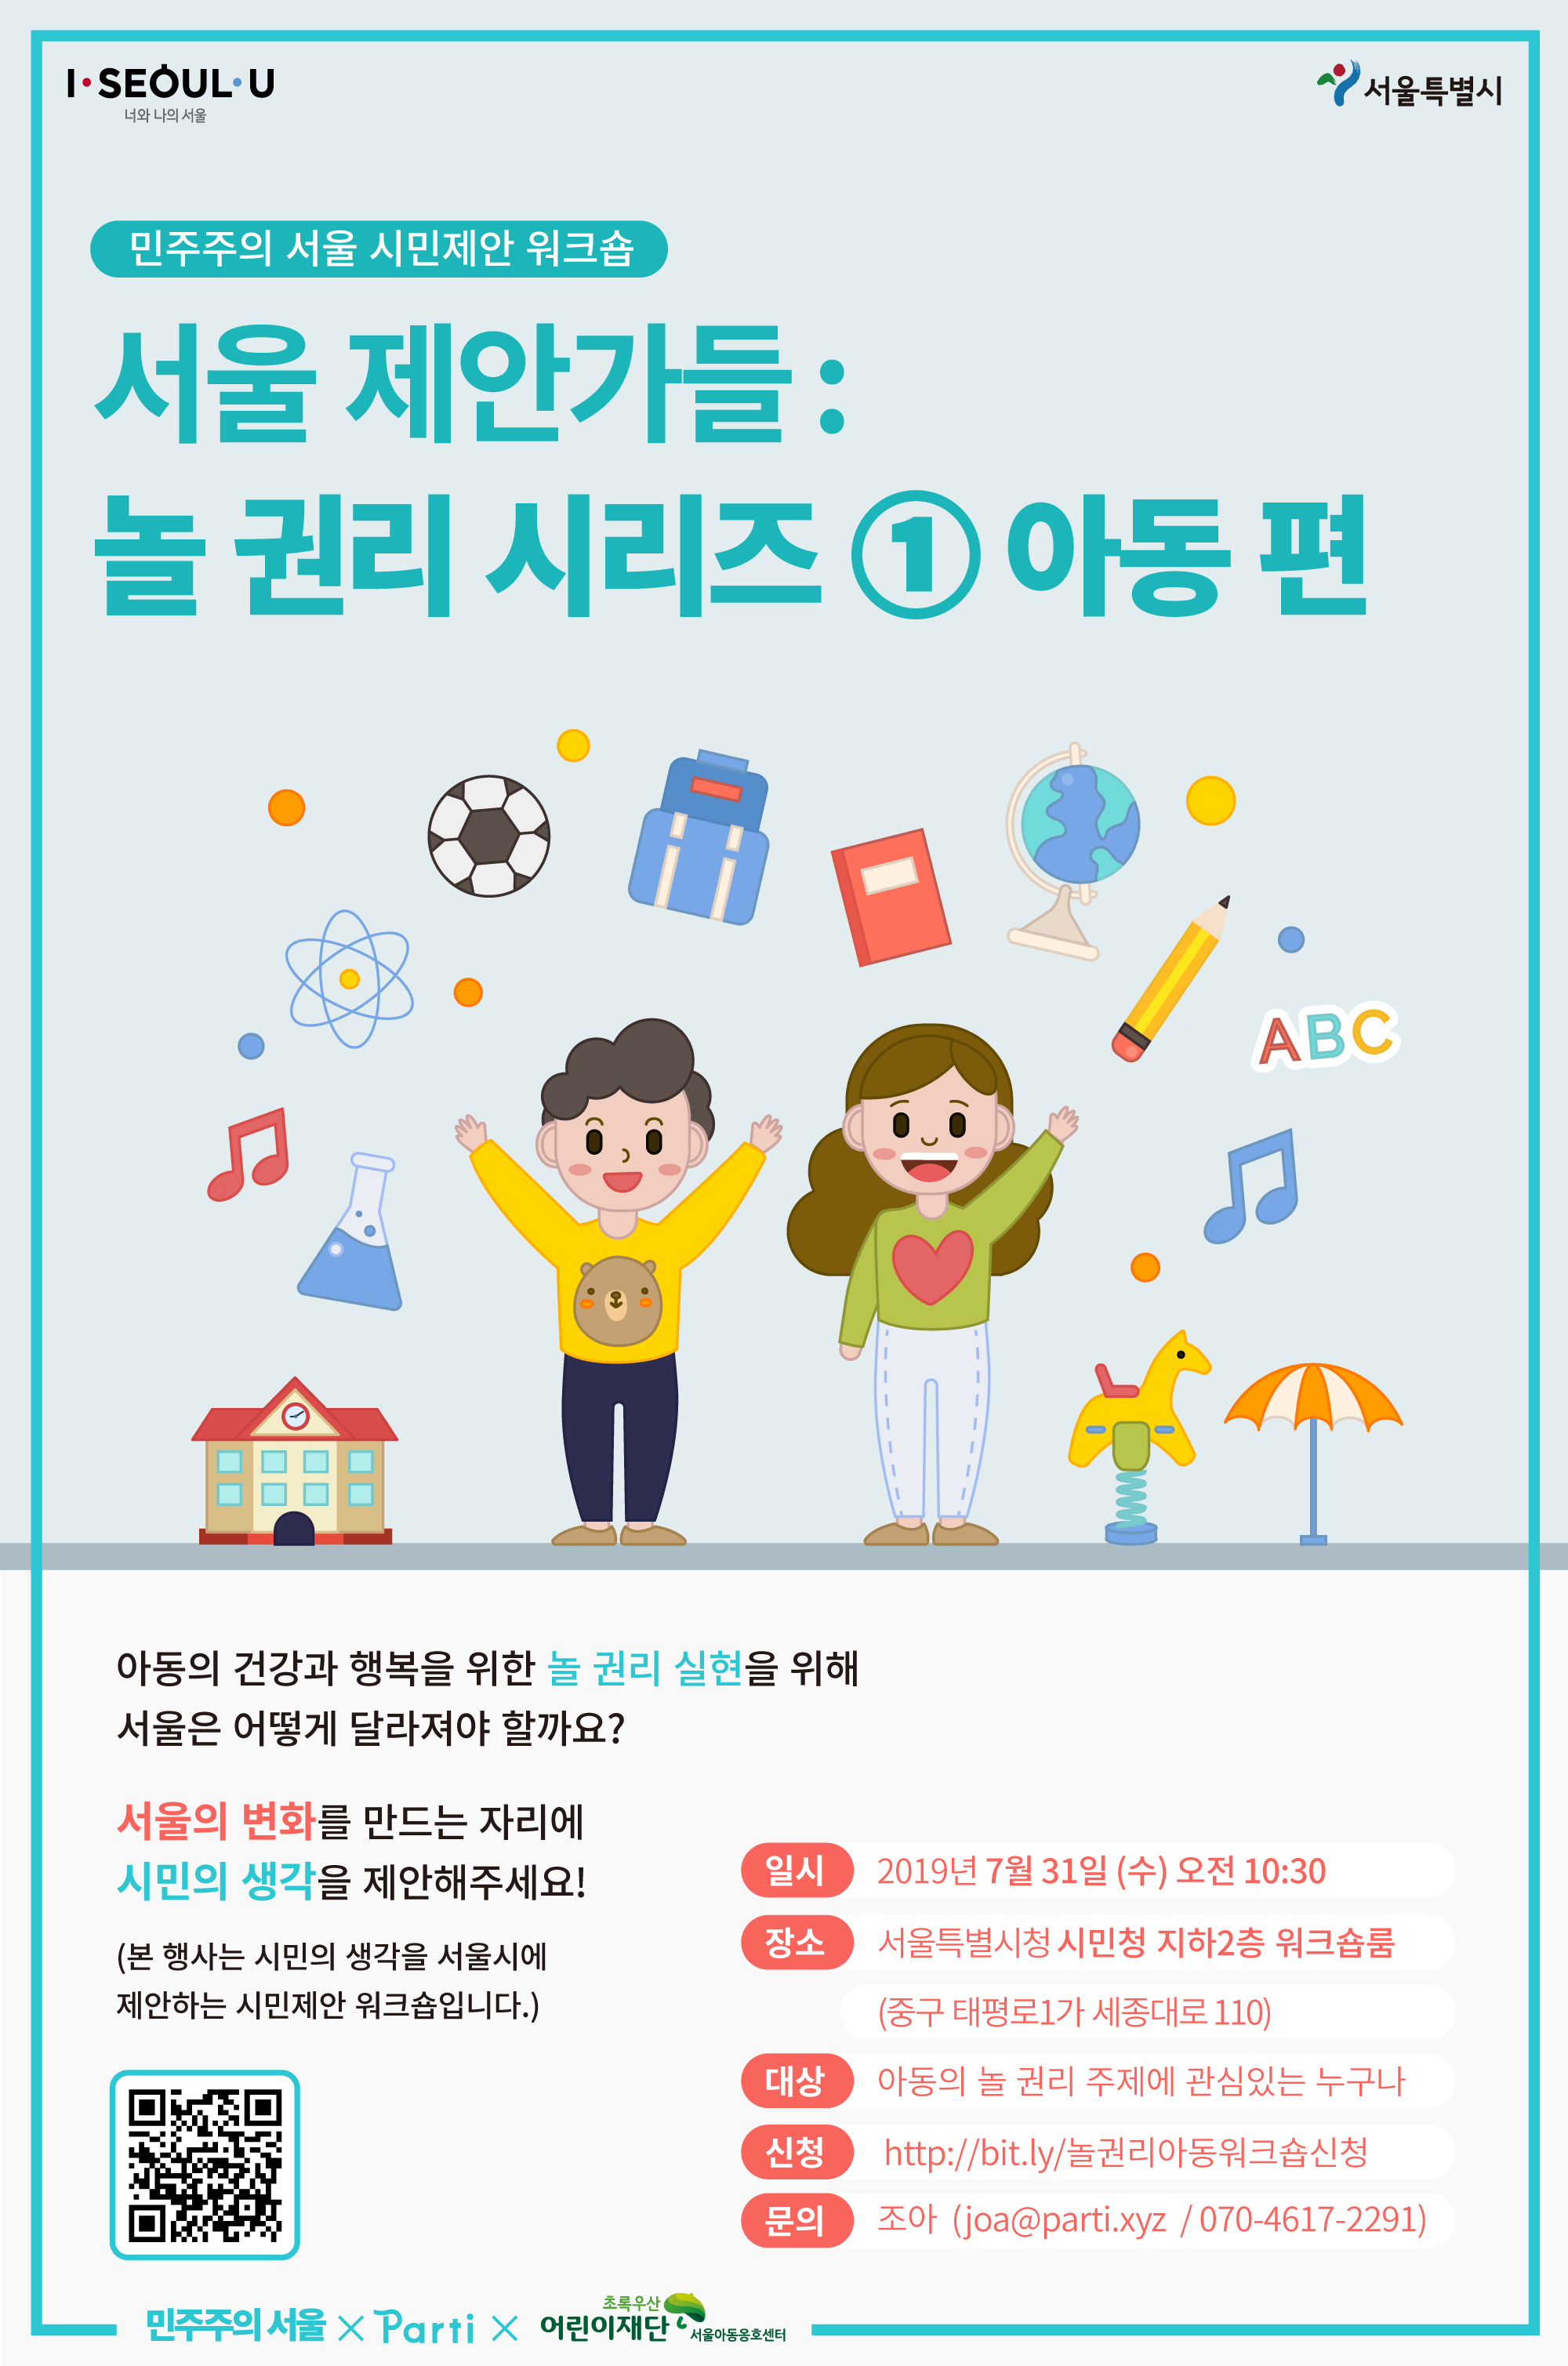 서울 제안가들 놀 권리 시리즈 1 아동 편 참여안내 아동의 건강과 행복을 위한 놀 권리 실현을 위해 서울은 어떻게 달라져야 할까요?서울의 변화를 만드는 자리에 시민의 생각을 제안해주세요! (본 행사는 시민의 생각을 서울시에 제안하는 시민제안 워크숍입니다.) 일시: 2019년 7월 31일 (수) 오전 10:30, 장소: 서울특별시청 시민청 지하2층 워크숍룸 (중구 태평로1가 세종대로 110), 대상: 아동의 놀 권리 주제에 관심있는 아동, 시민 누구나, 문의: 조아 joa@parti.xyz / 070-4617-2291 오는 8월 중에는 청소년 놀 권리, 장애 놀 권리 행사도 진행할 예정입니다. 많은 관심과 참여 부탁드립니다